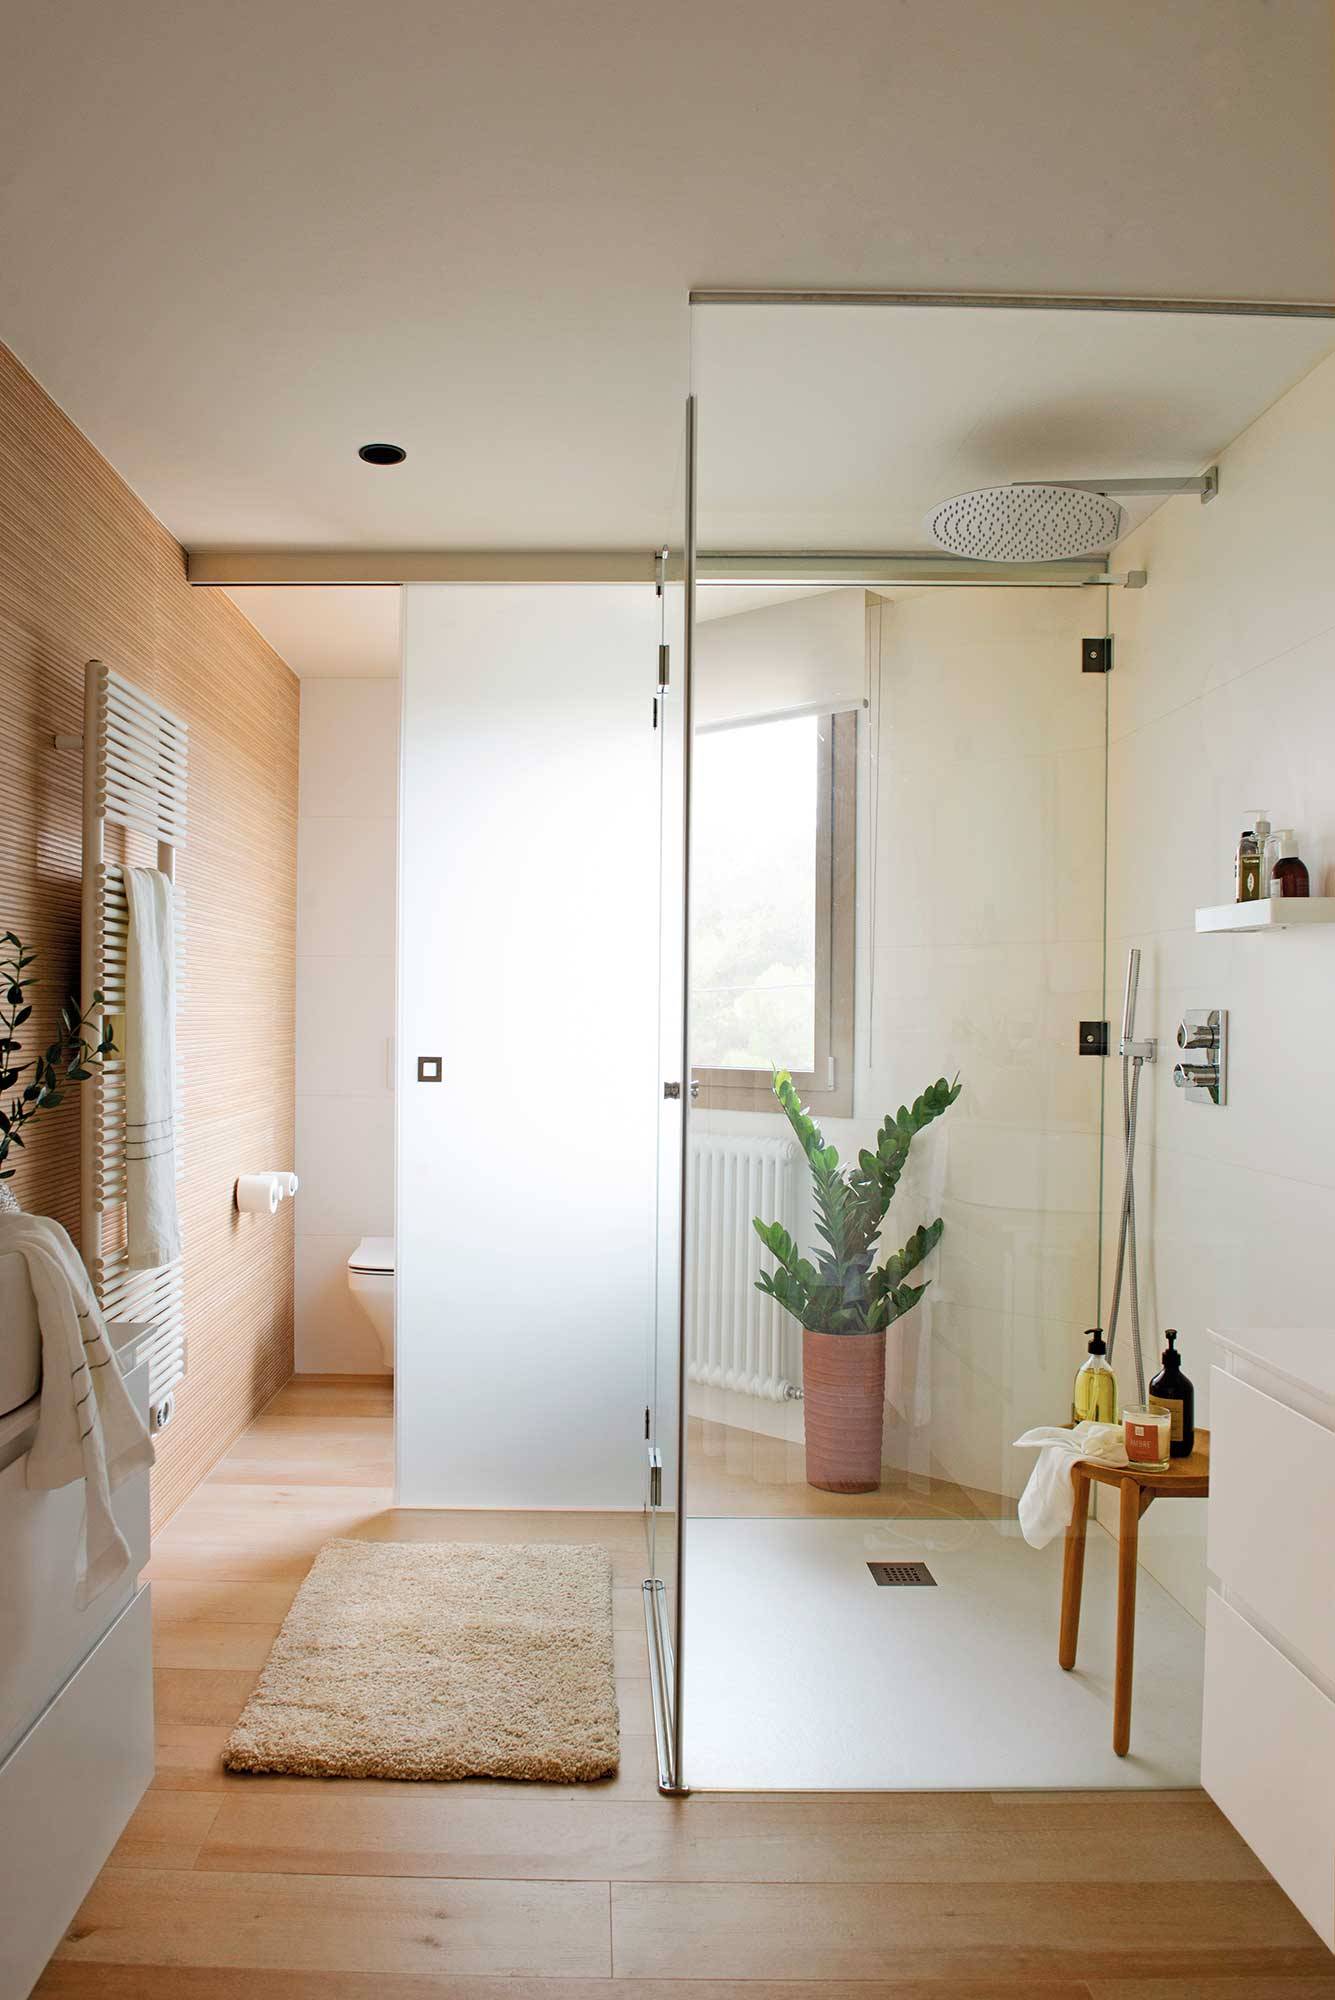 Baño blanco moderno con cabina de sanitarios transparente.